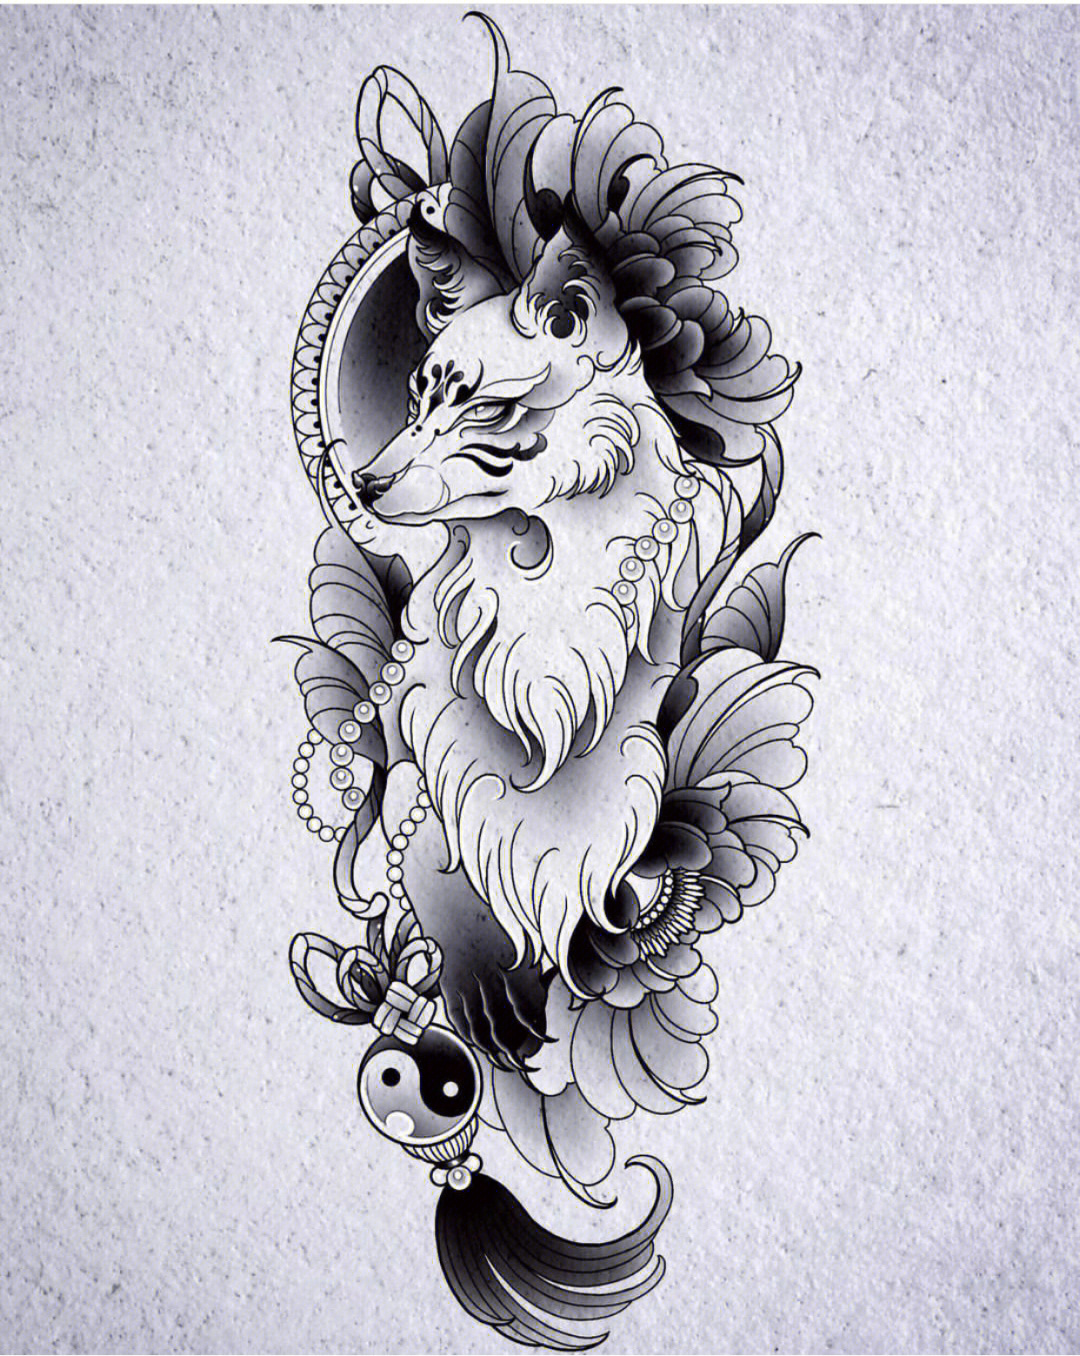 狐狸纹身手稿素材大图图片